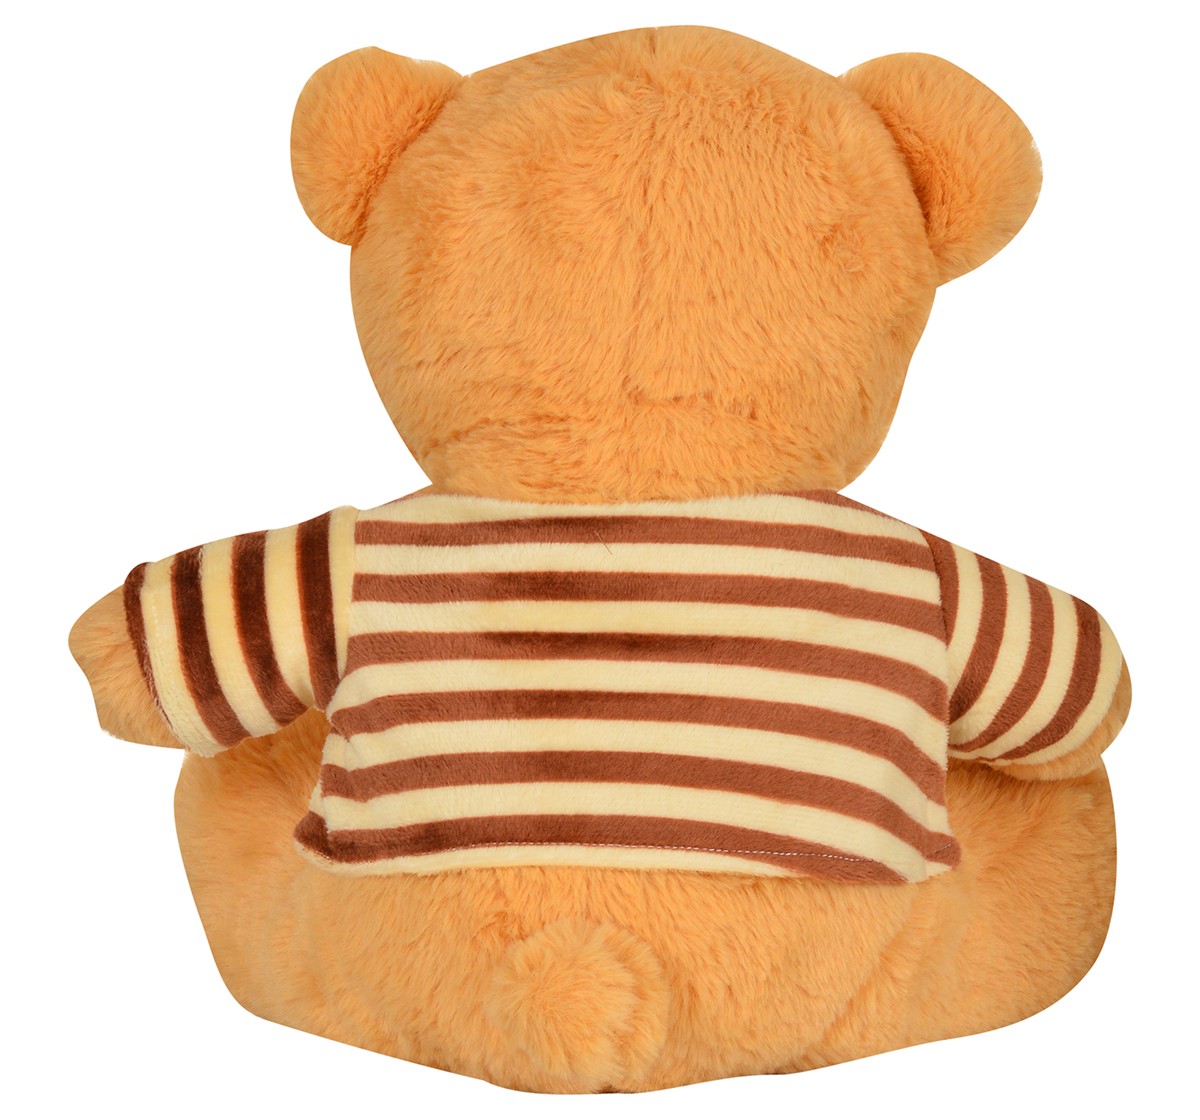 Mirada 30cm sitting teddy bear with Multicolor strip dress Multicolor 3Y+